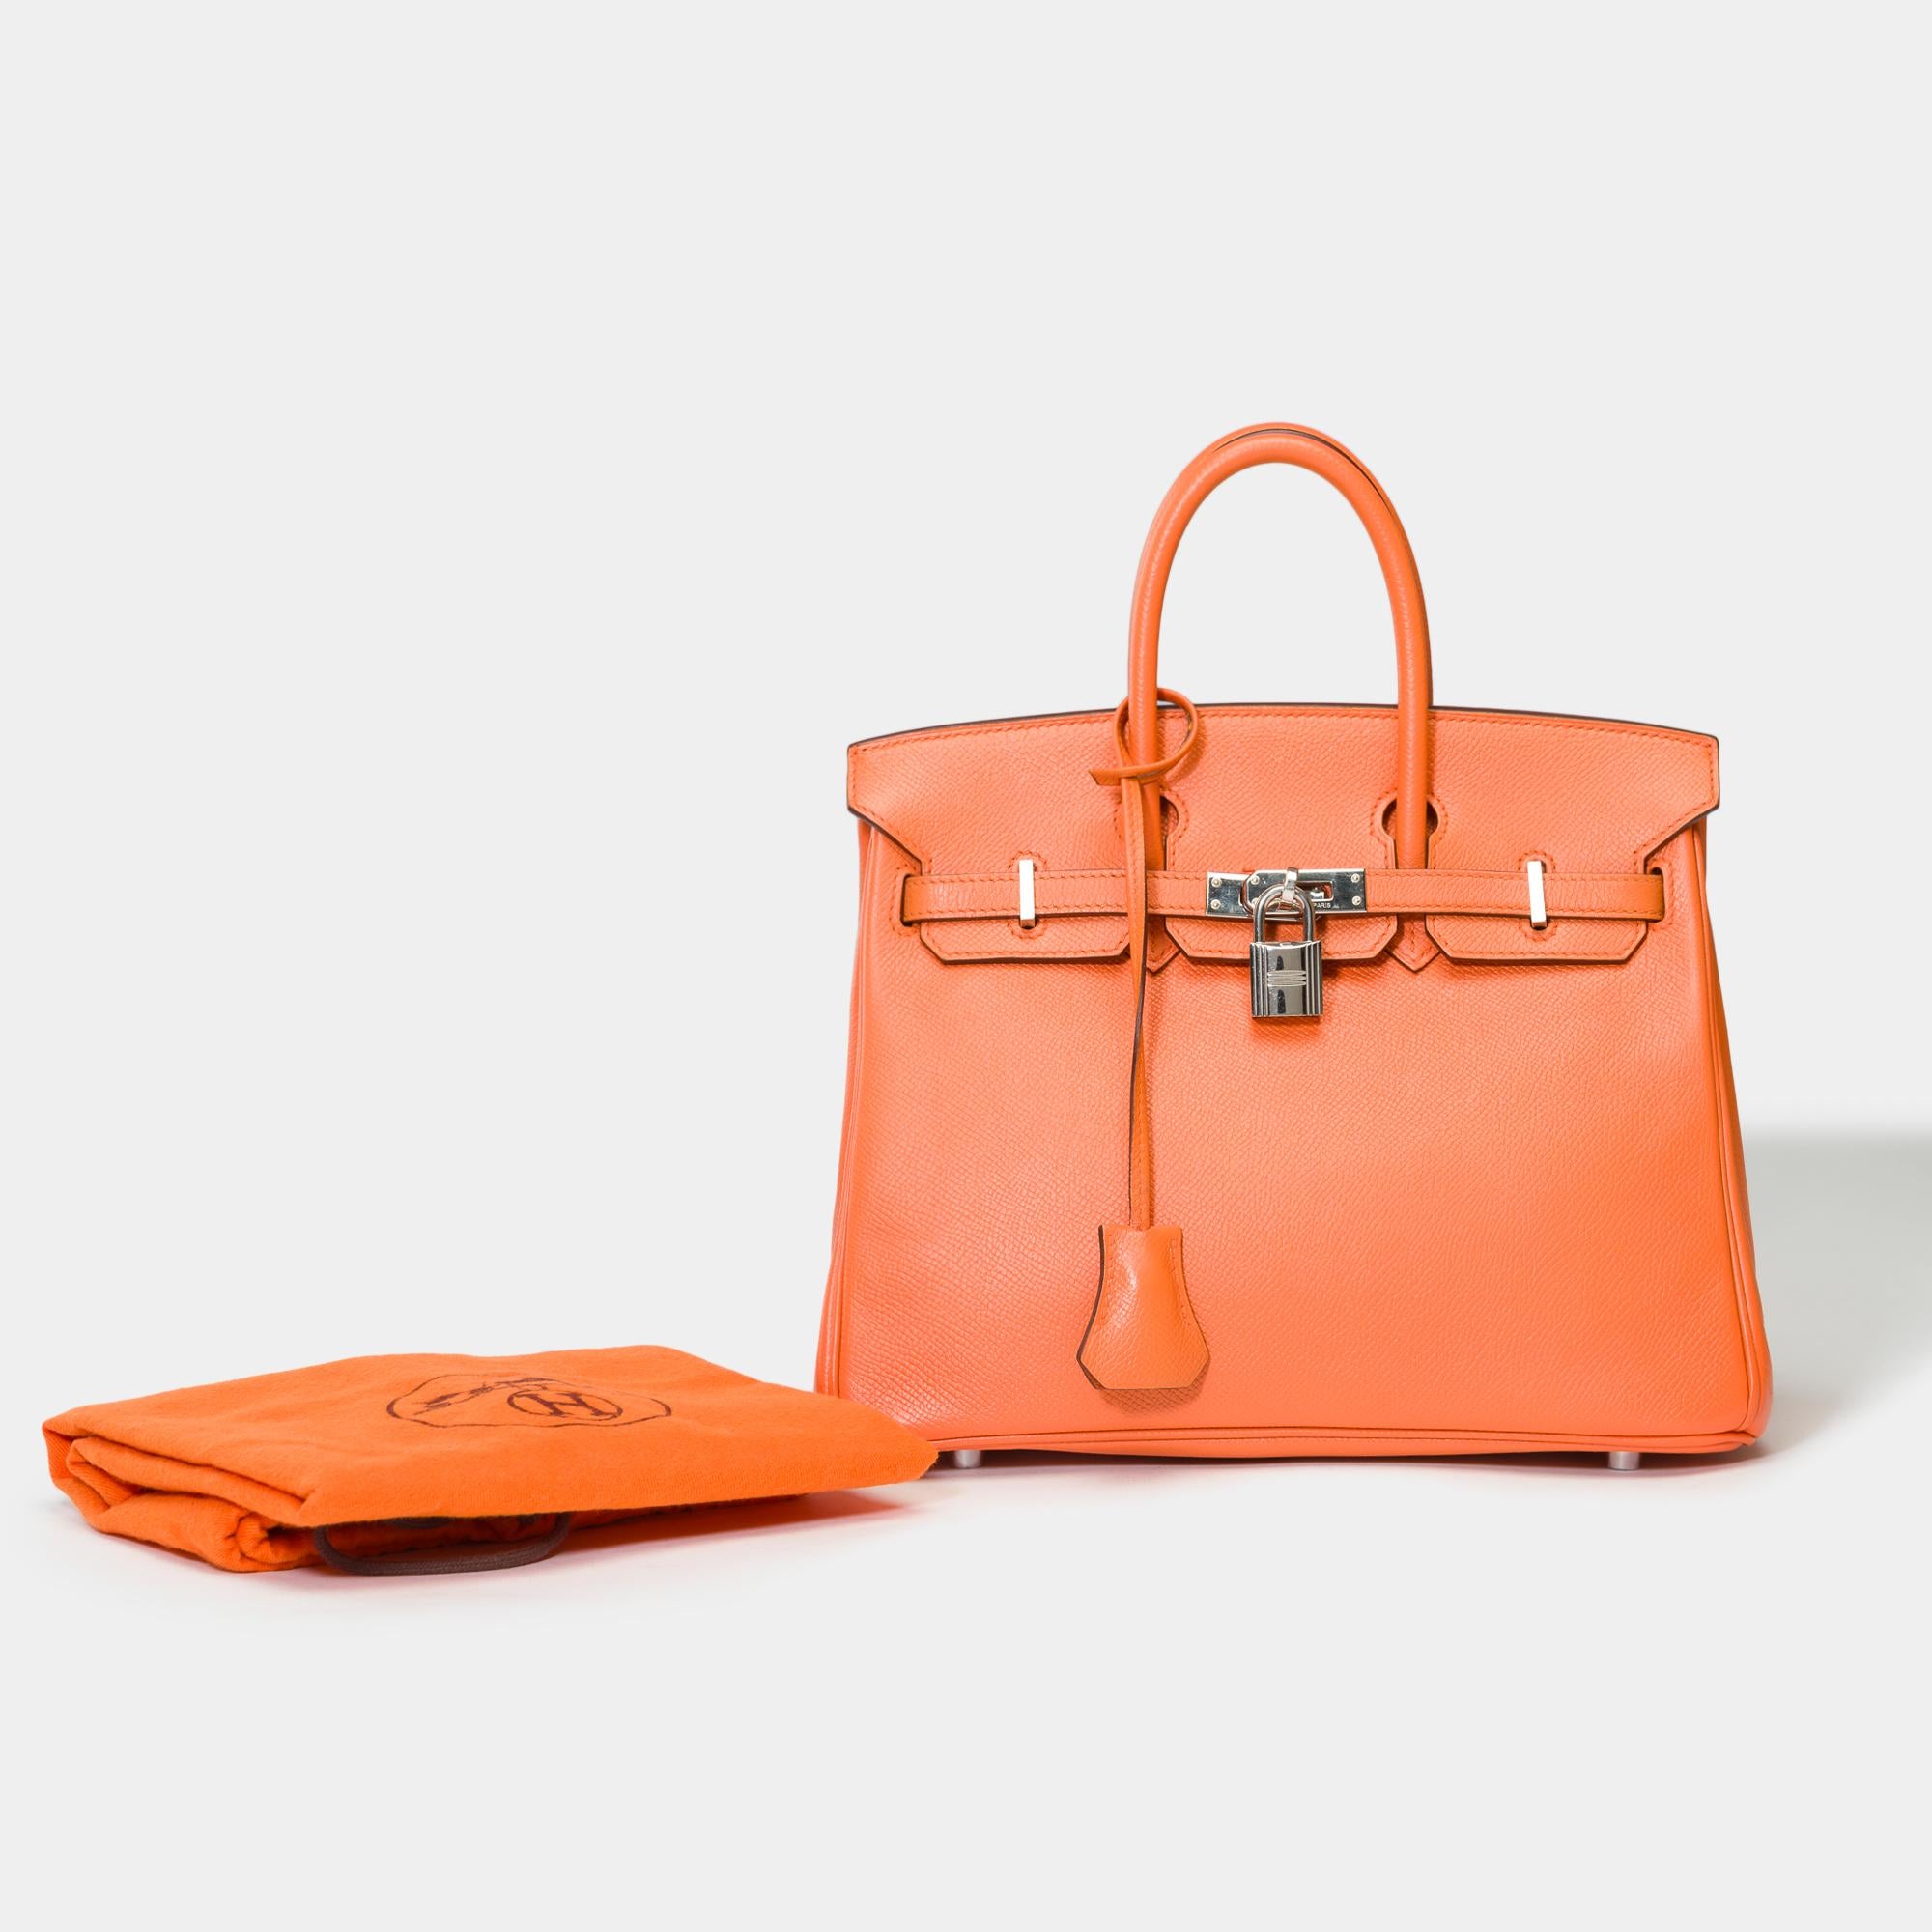 Helle Hermès Birkin 25 Handtasche aus orangefarbenem Epsom-Kalbsleder, palladiumsilberner Metallbesatz, doppelter Henkel aus orangefarbenem Leder zum Tragen in der Hand

Klappenverschluss
Innenfutter aus orangefarbenem Leder, eine